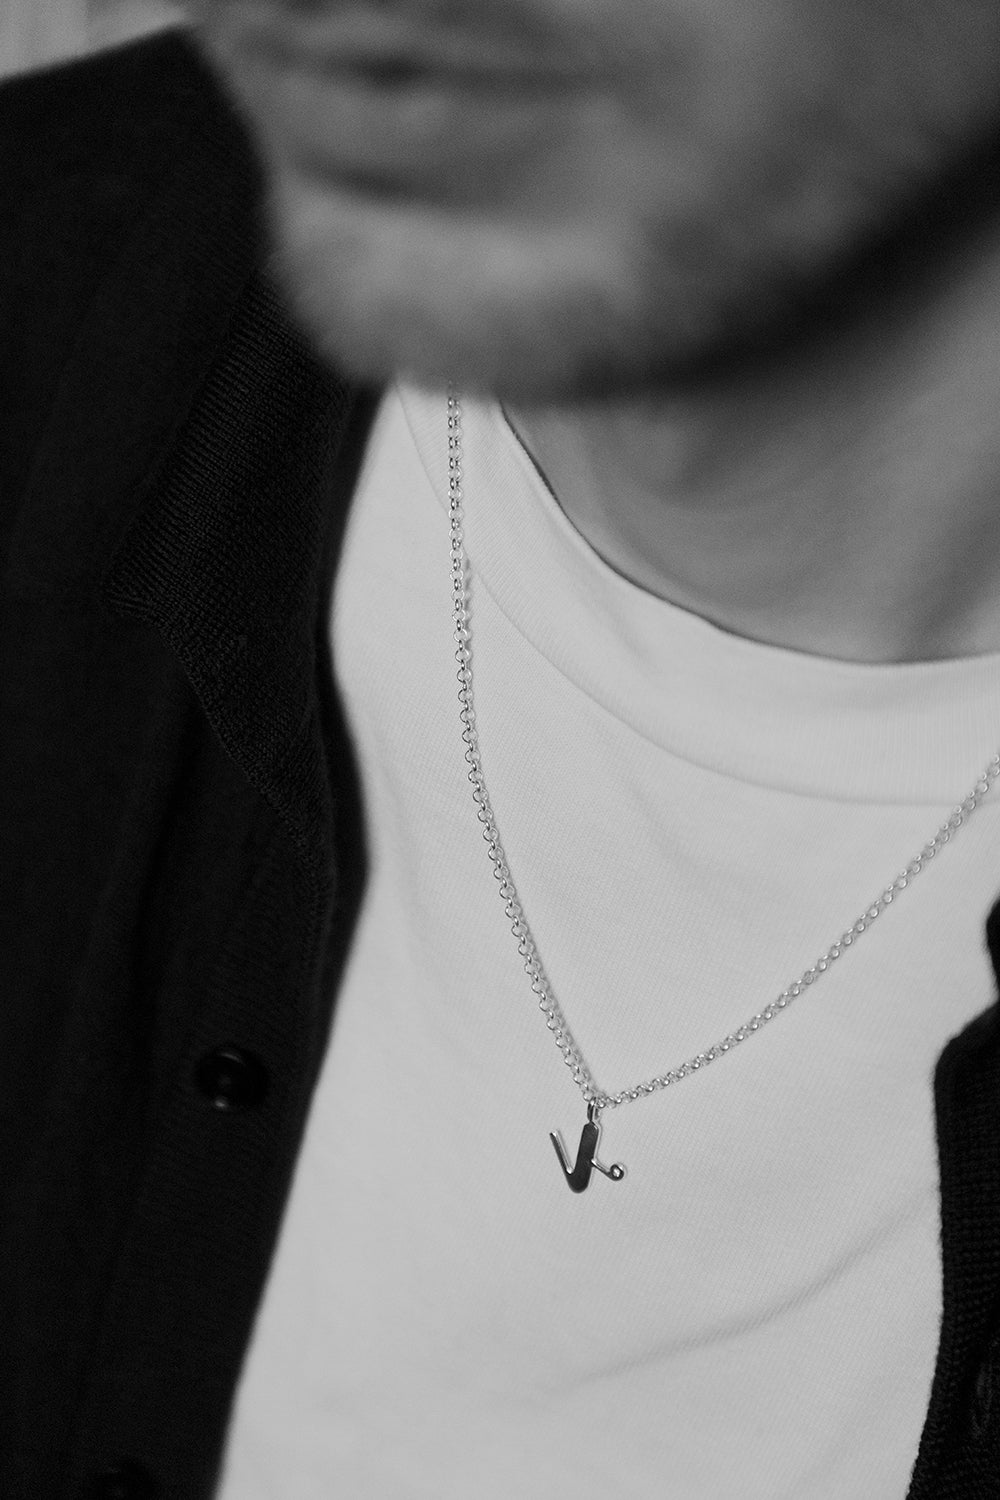 K necklace